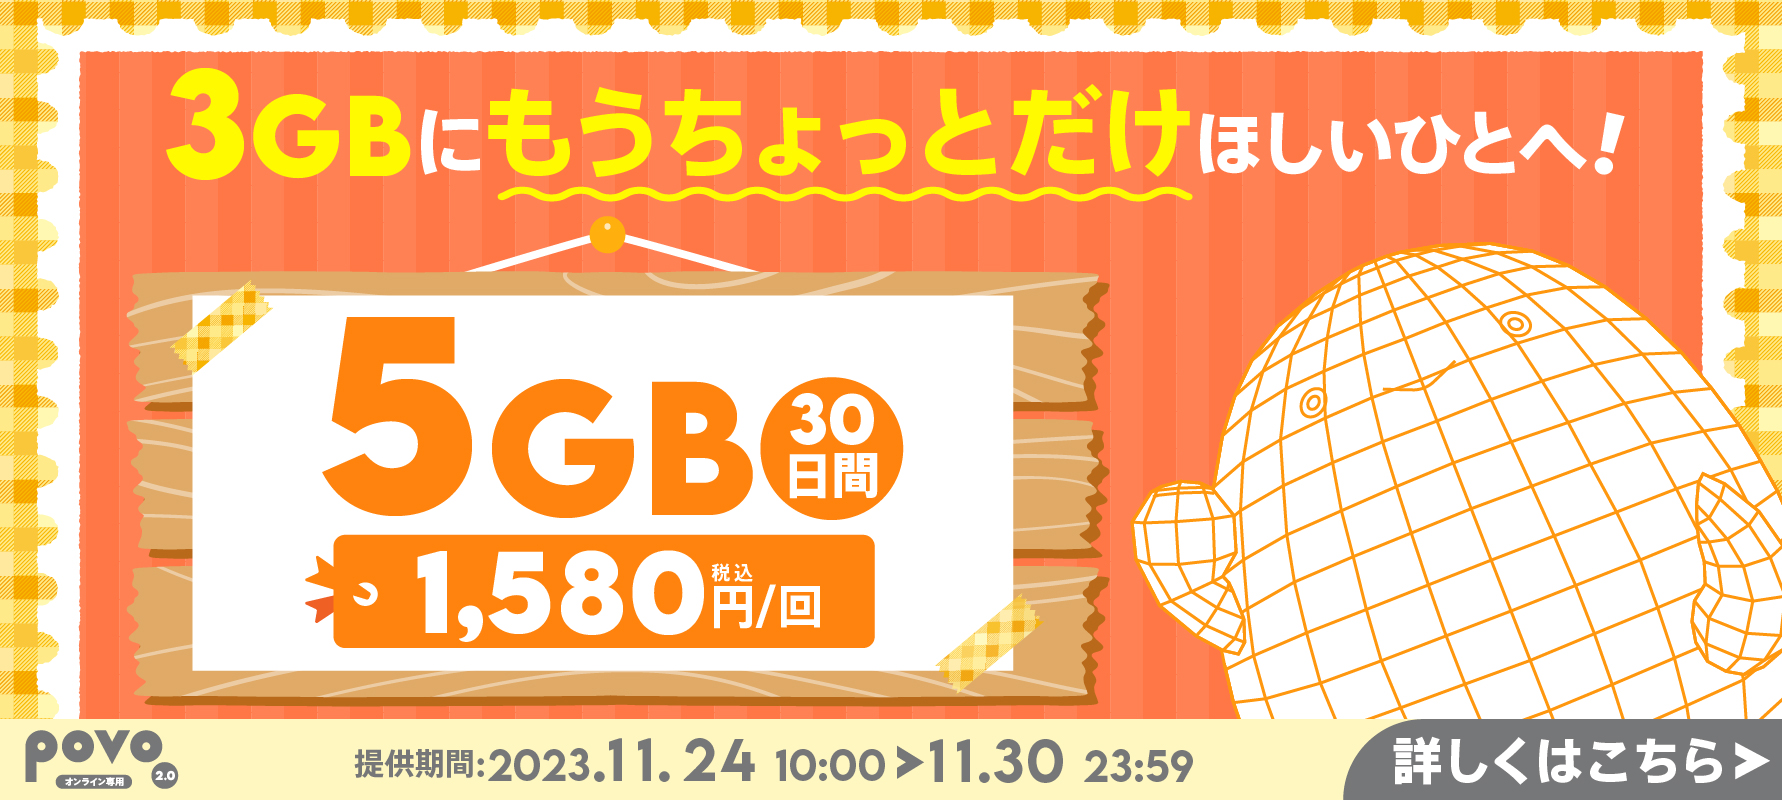 3GBにもうちょっとだけほしい人へ。5GB30日1,580円。